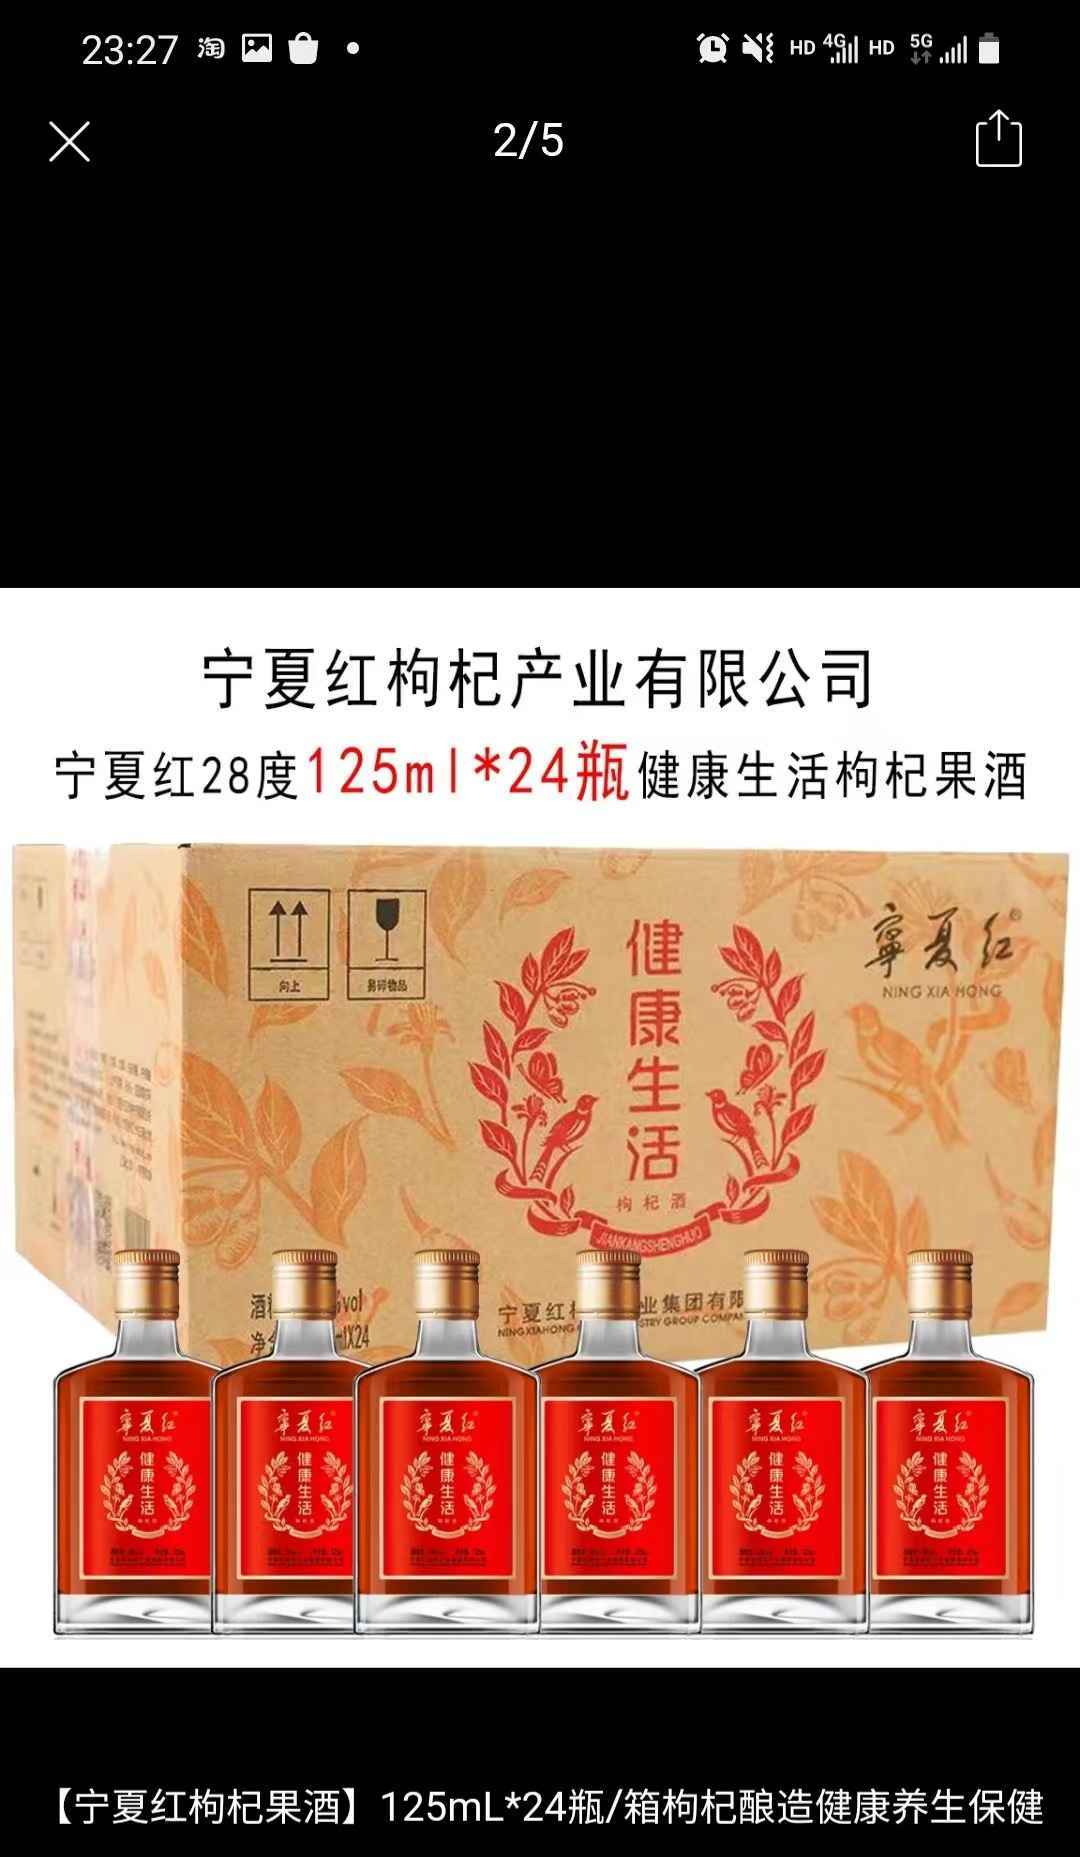 宁夏红125ml枸杞酒，24瓶装，整箱包邮，一箱200，1件起发。